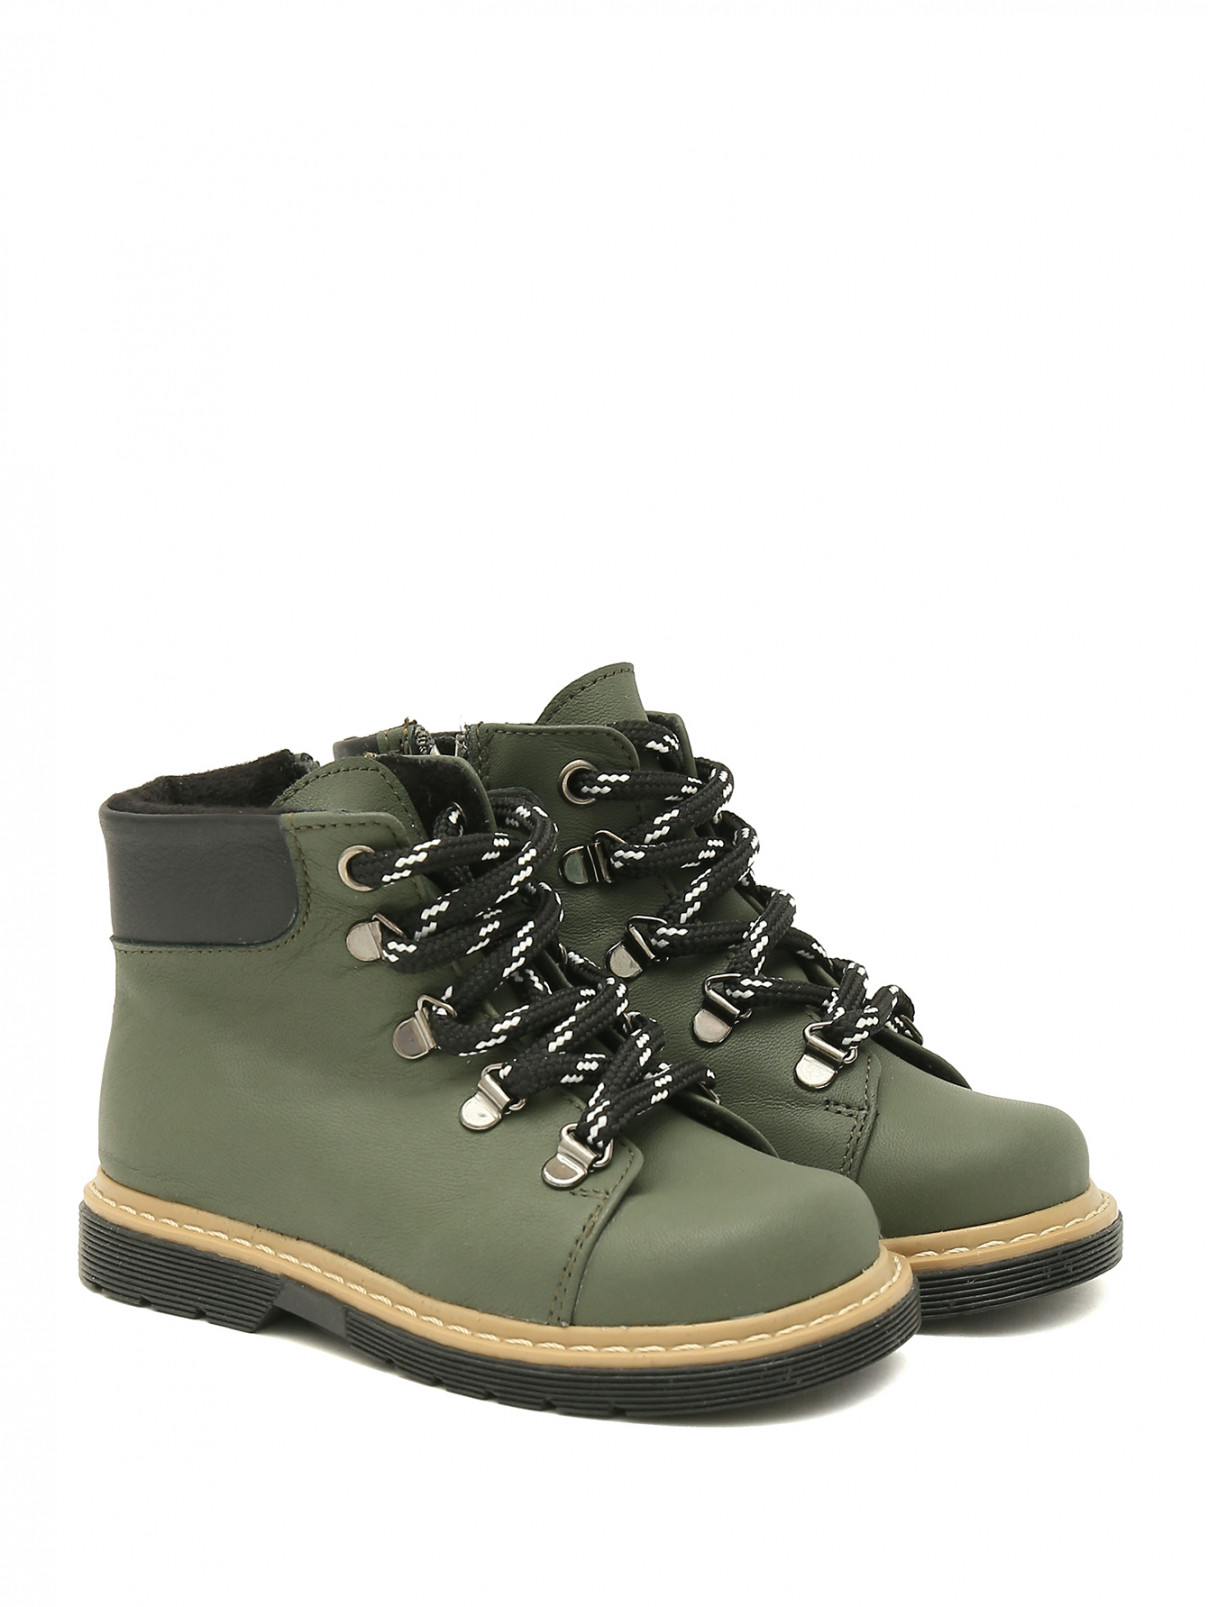 Ботинки из кожи на шнуровке Zecchino d`Oro  –  Общий вид  – Цвет:  Зеленый